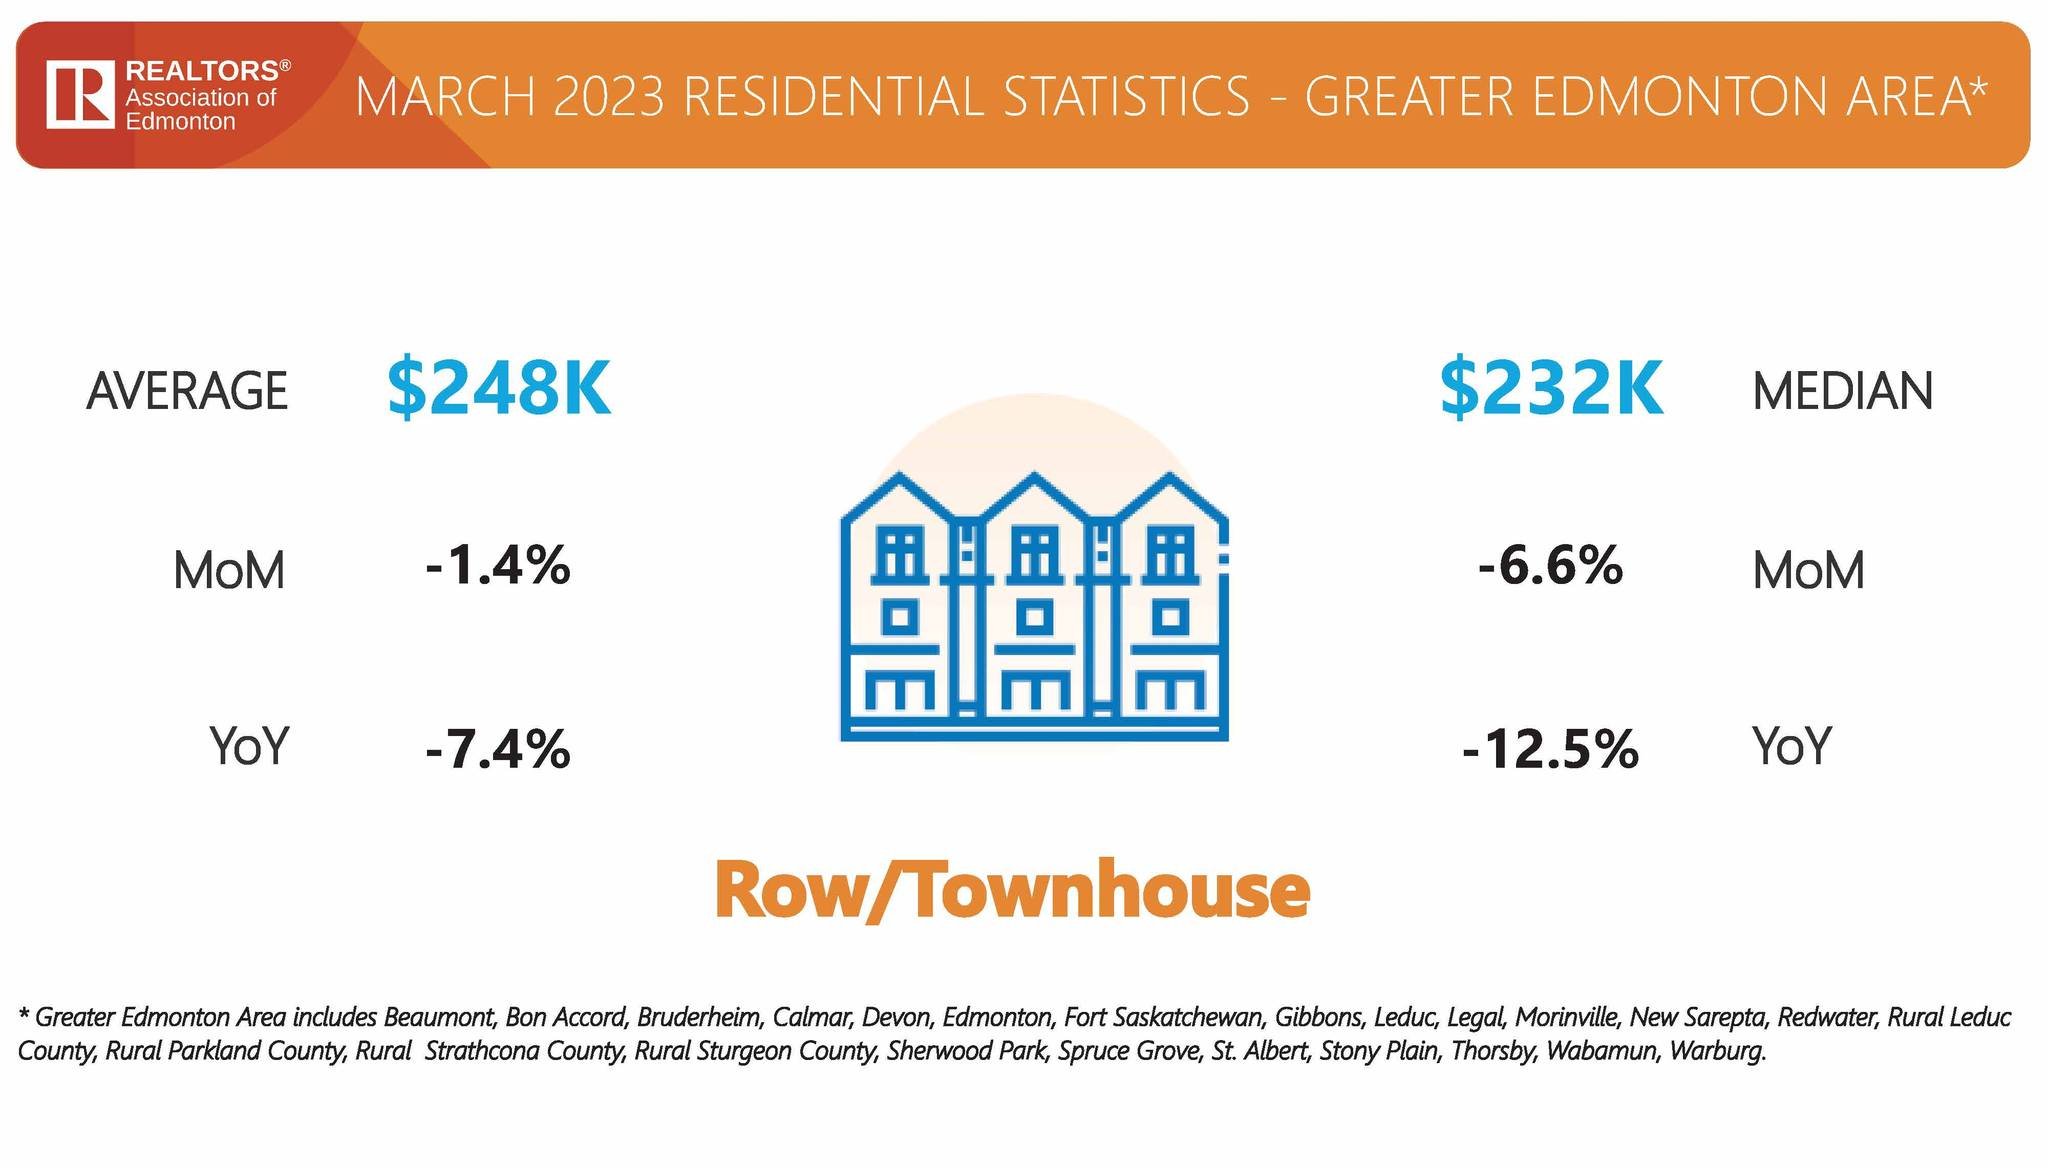 08 - Row:Townhouse - Average Price.jpg